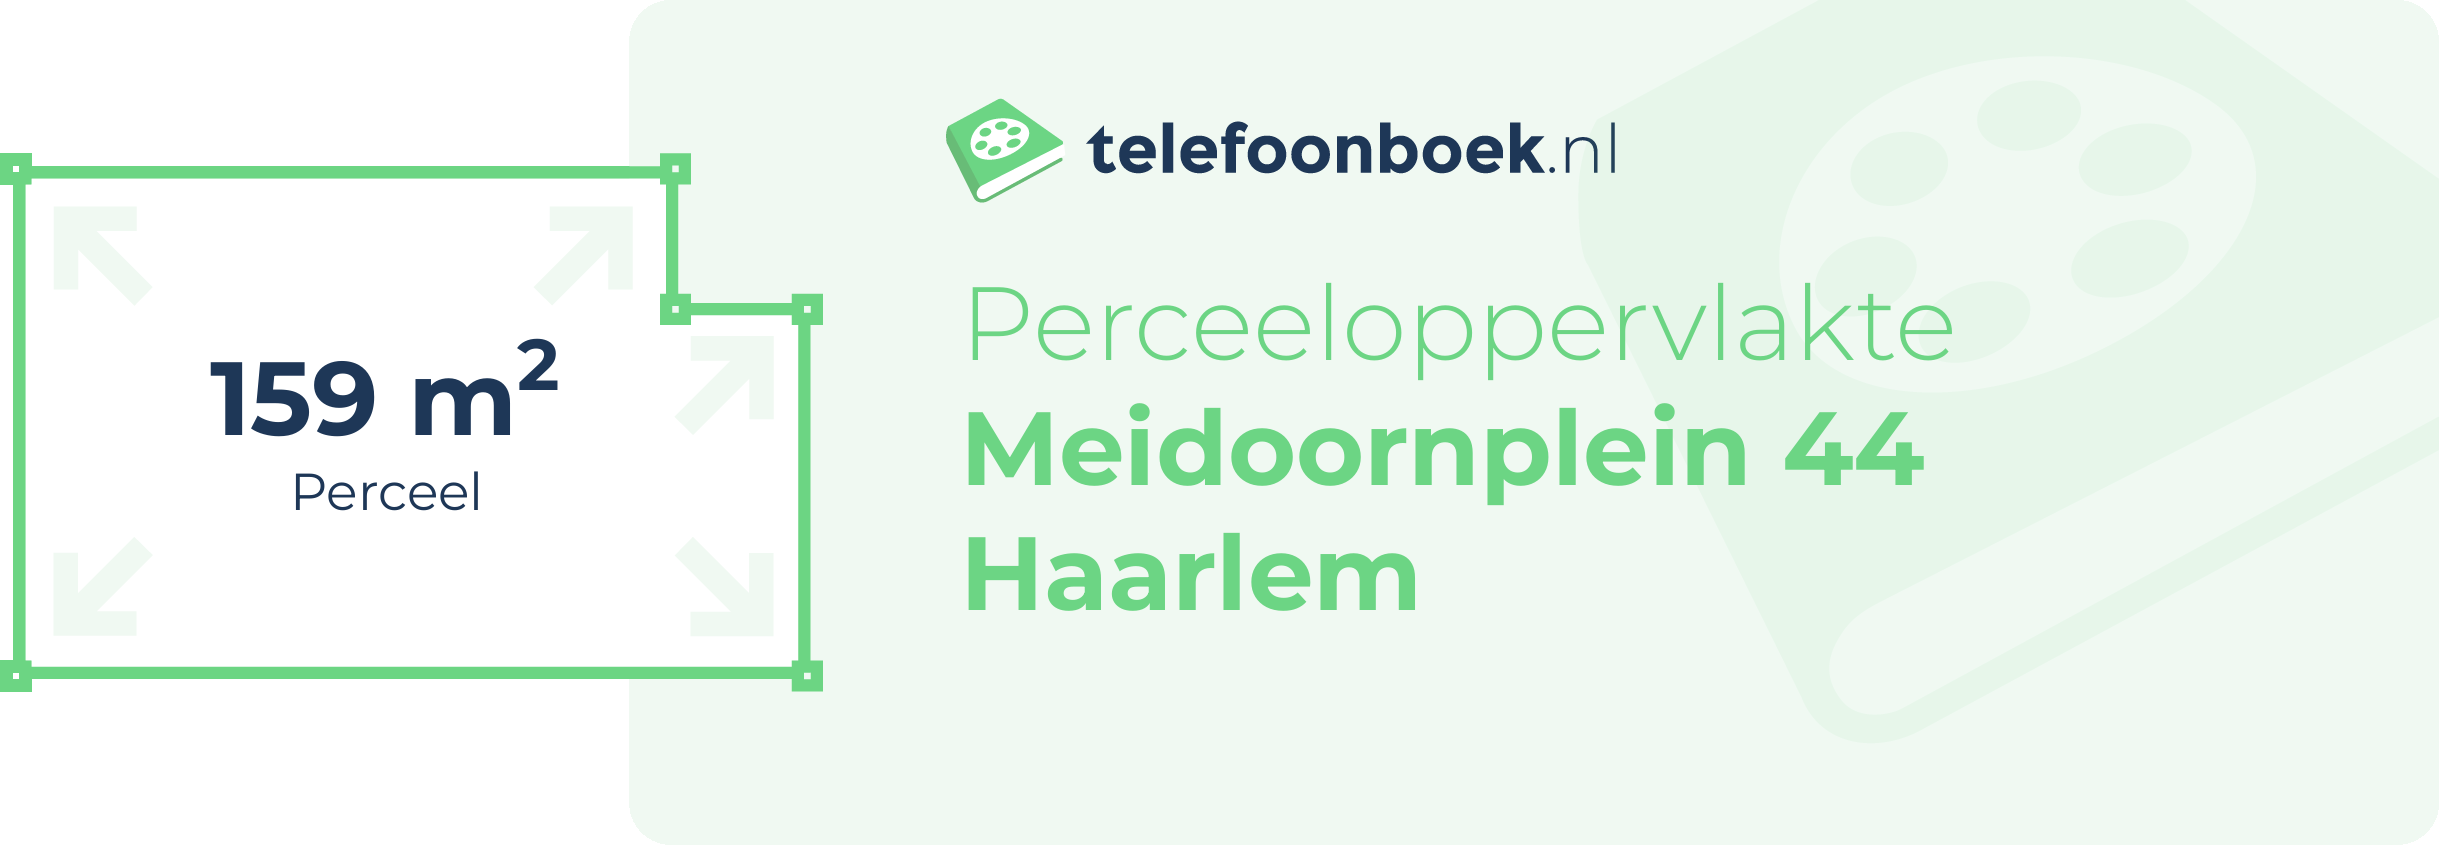 Perceeloppervlakte Meidoornplein 44 Haarlem